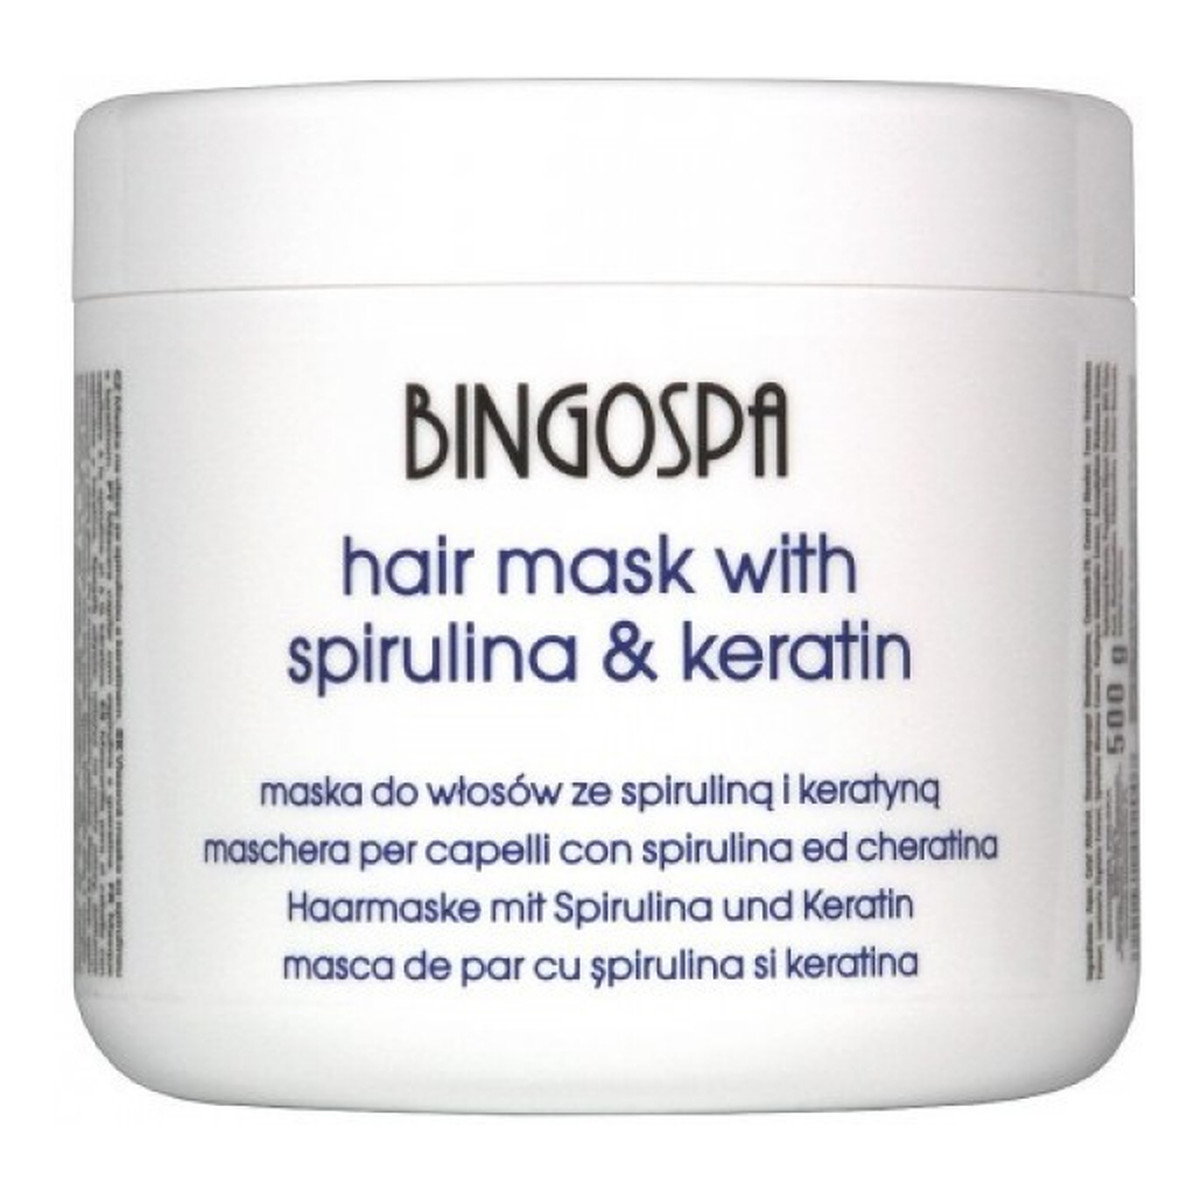 BingoSpa Maska do włosów ze spiruliną i keratyną 500g